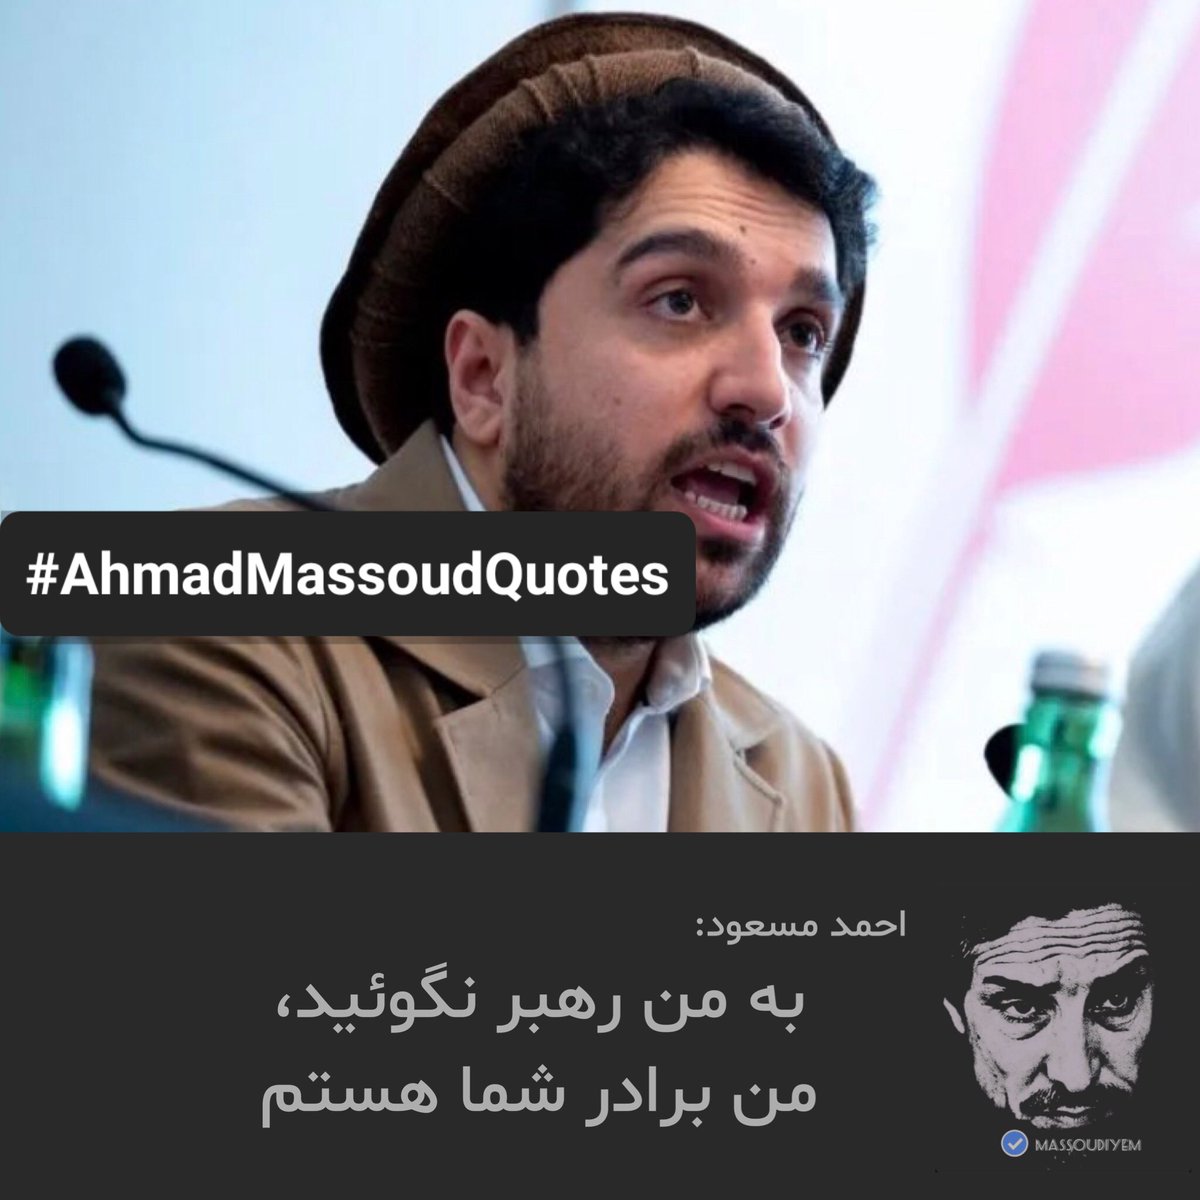 احمد مسعود در حاشیه نشست ویانا:
'کشور مارا که خراب کرد رهبر و رهبر نماها، برای من رهبر نگوئید من برادر شما هستم !'
#AhmadMassoudQuotes